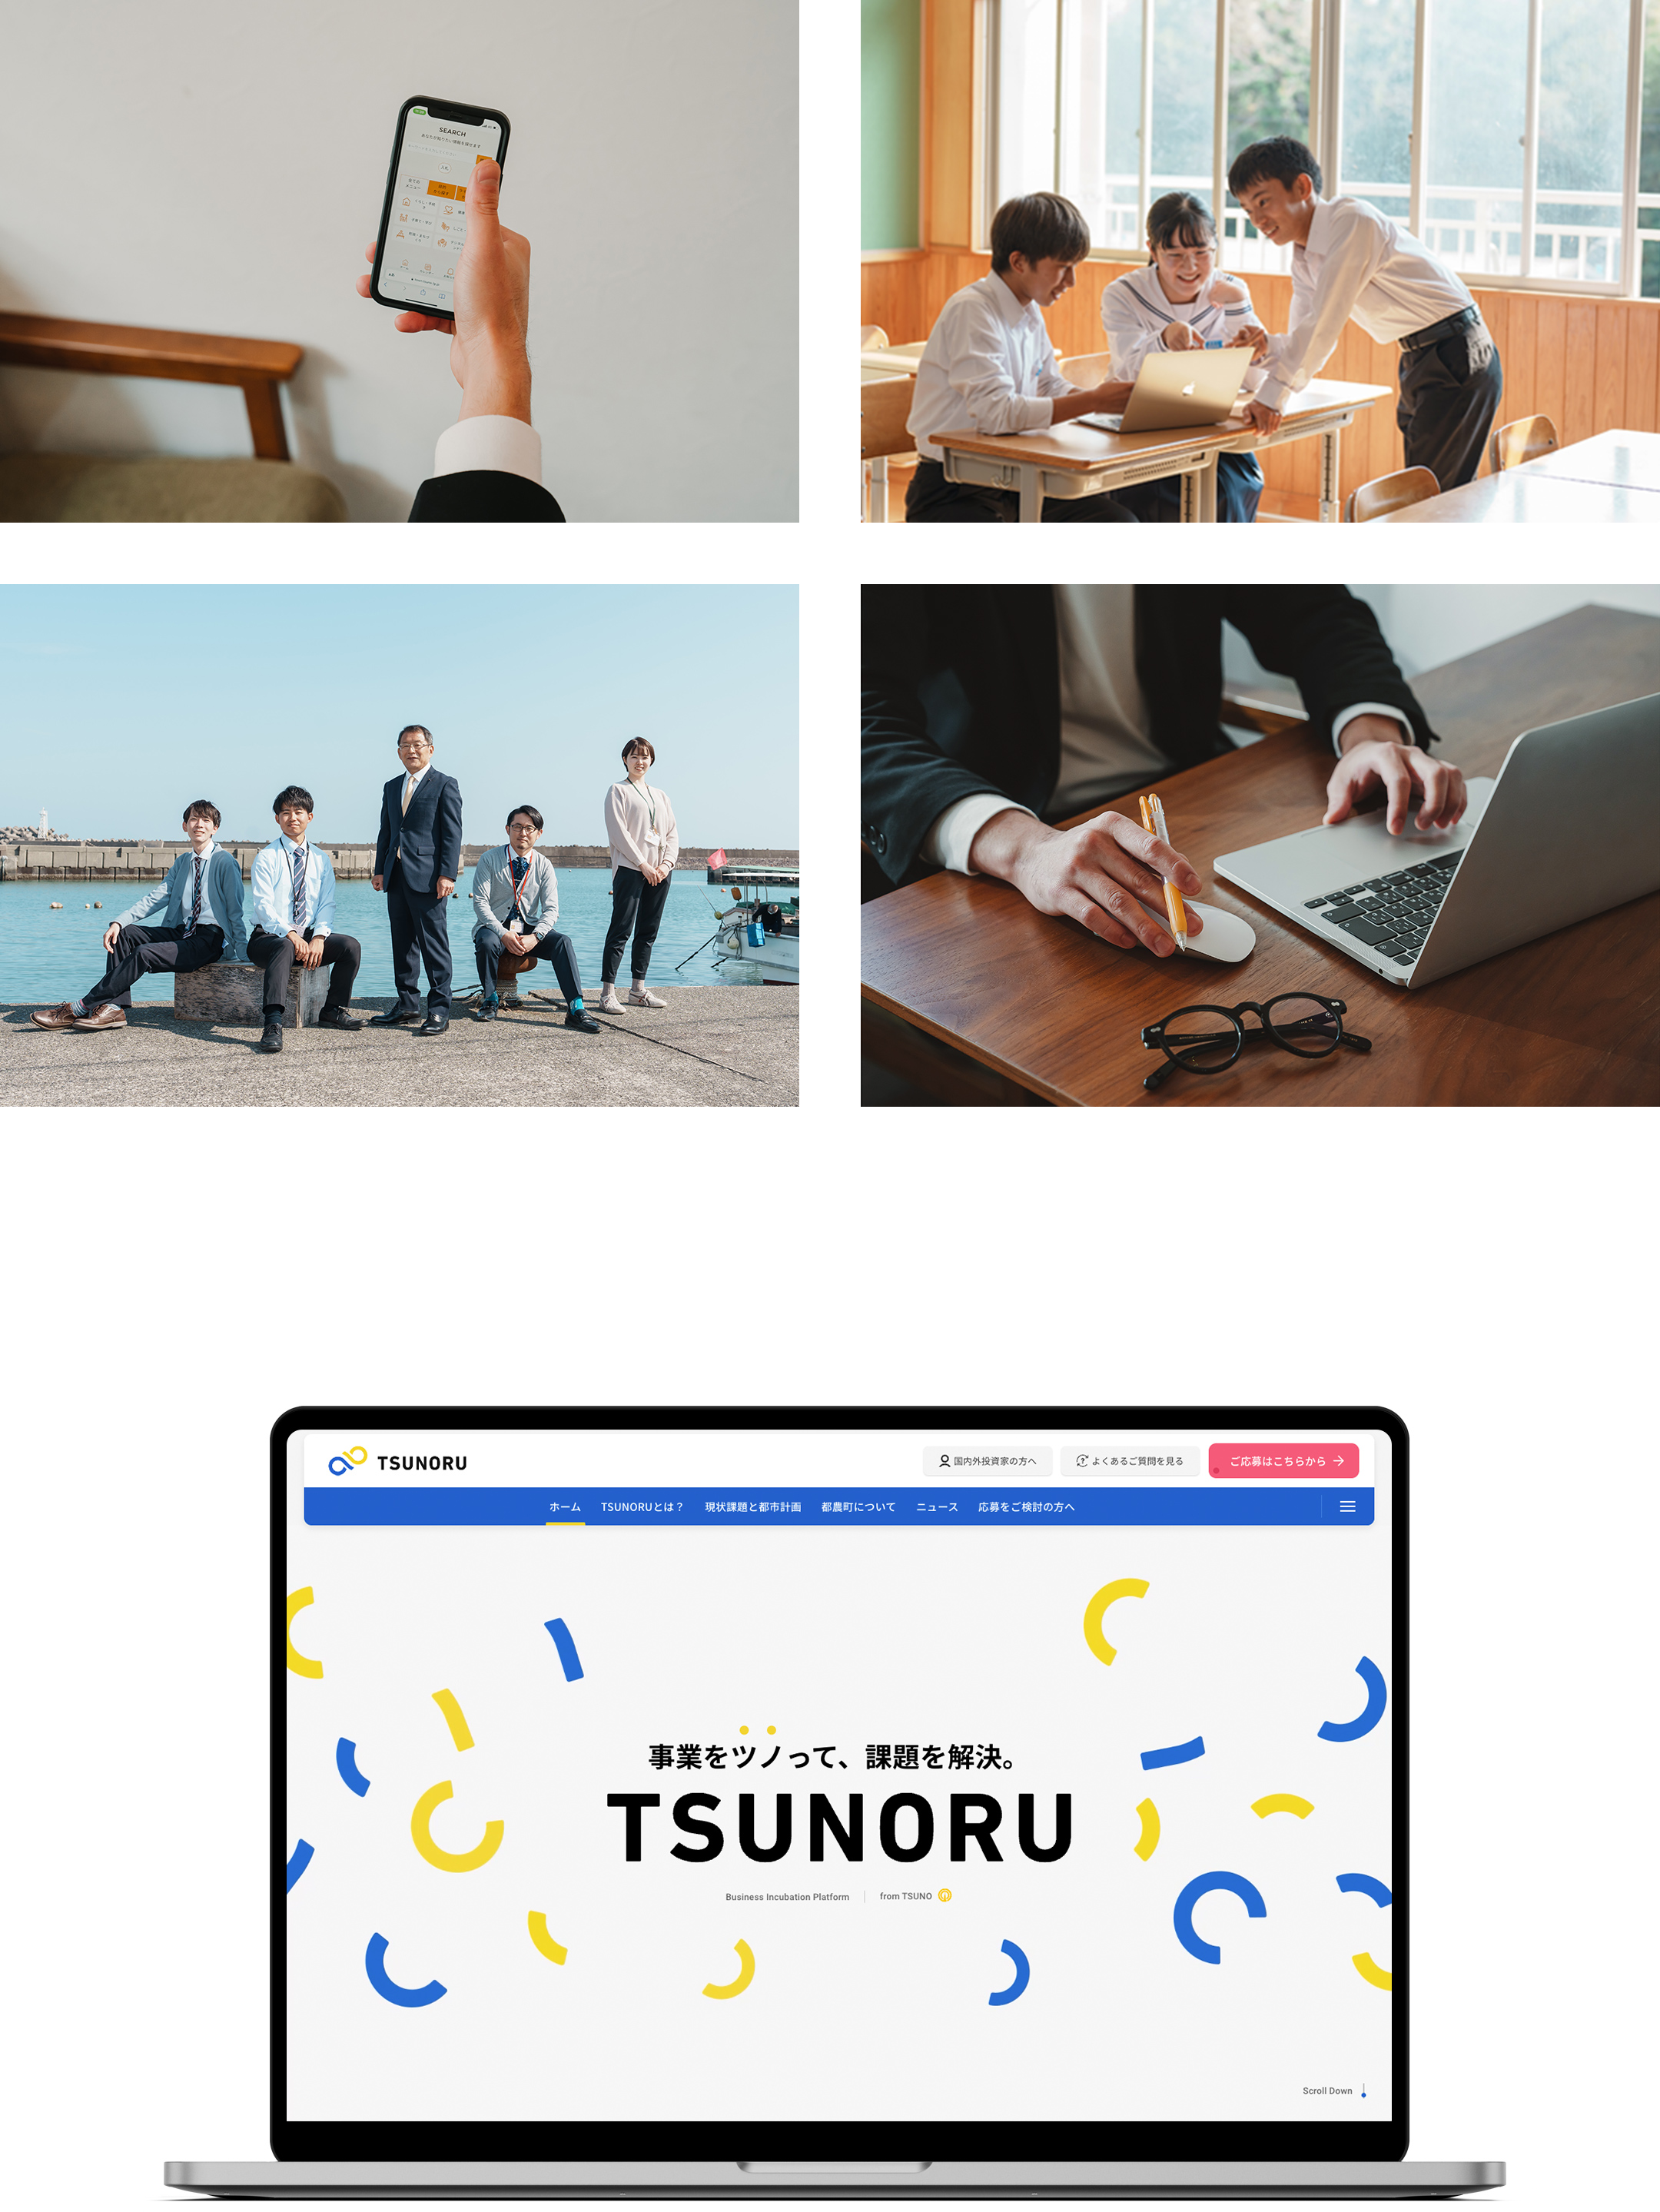 一般社団法人TSUNORU / インキュベーションプラットフォーム『TSUNORU』